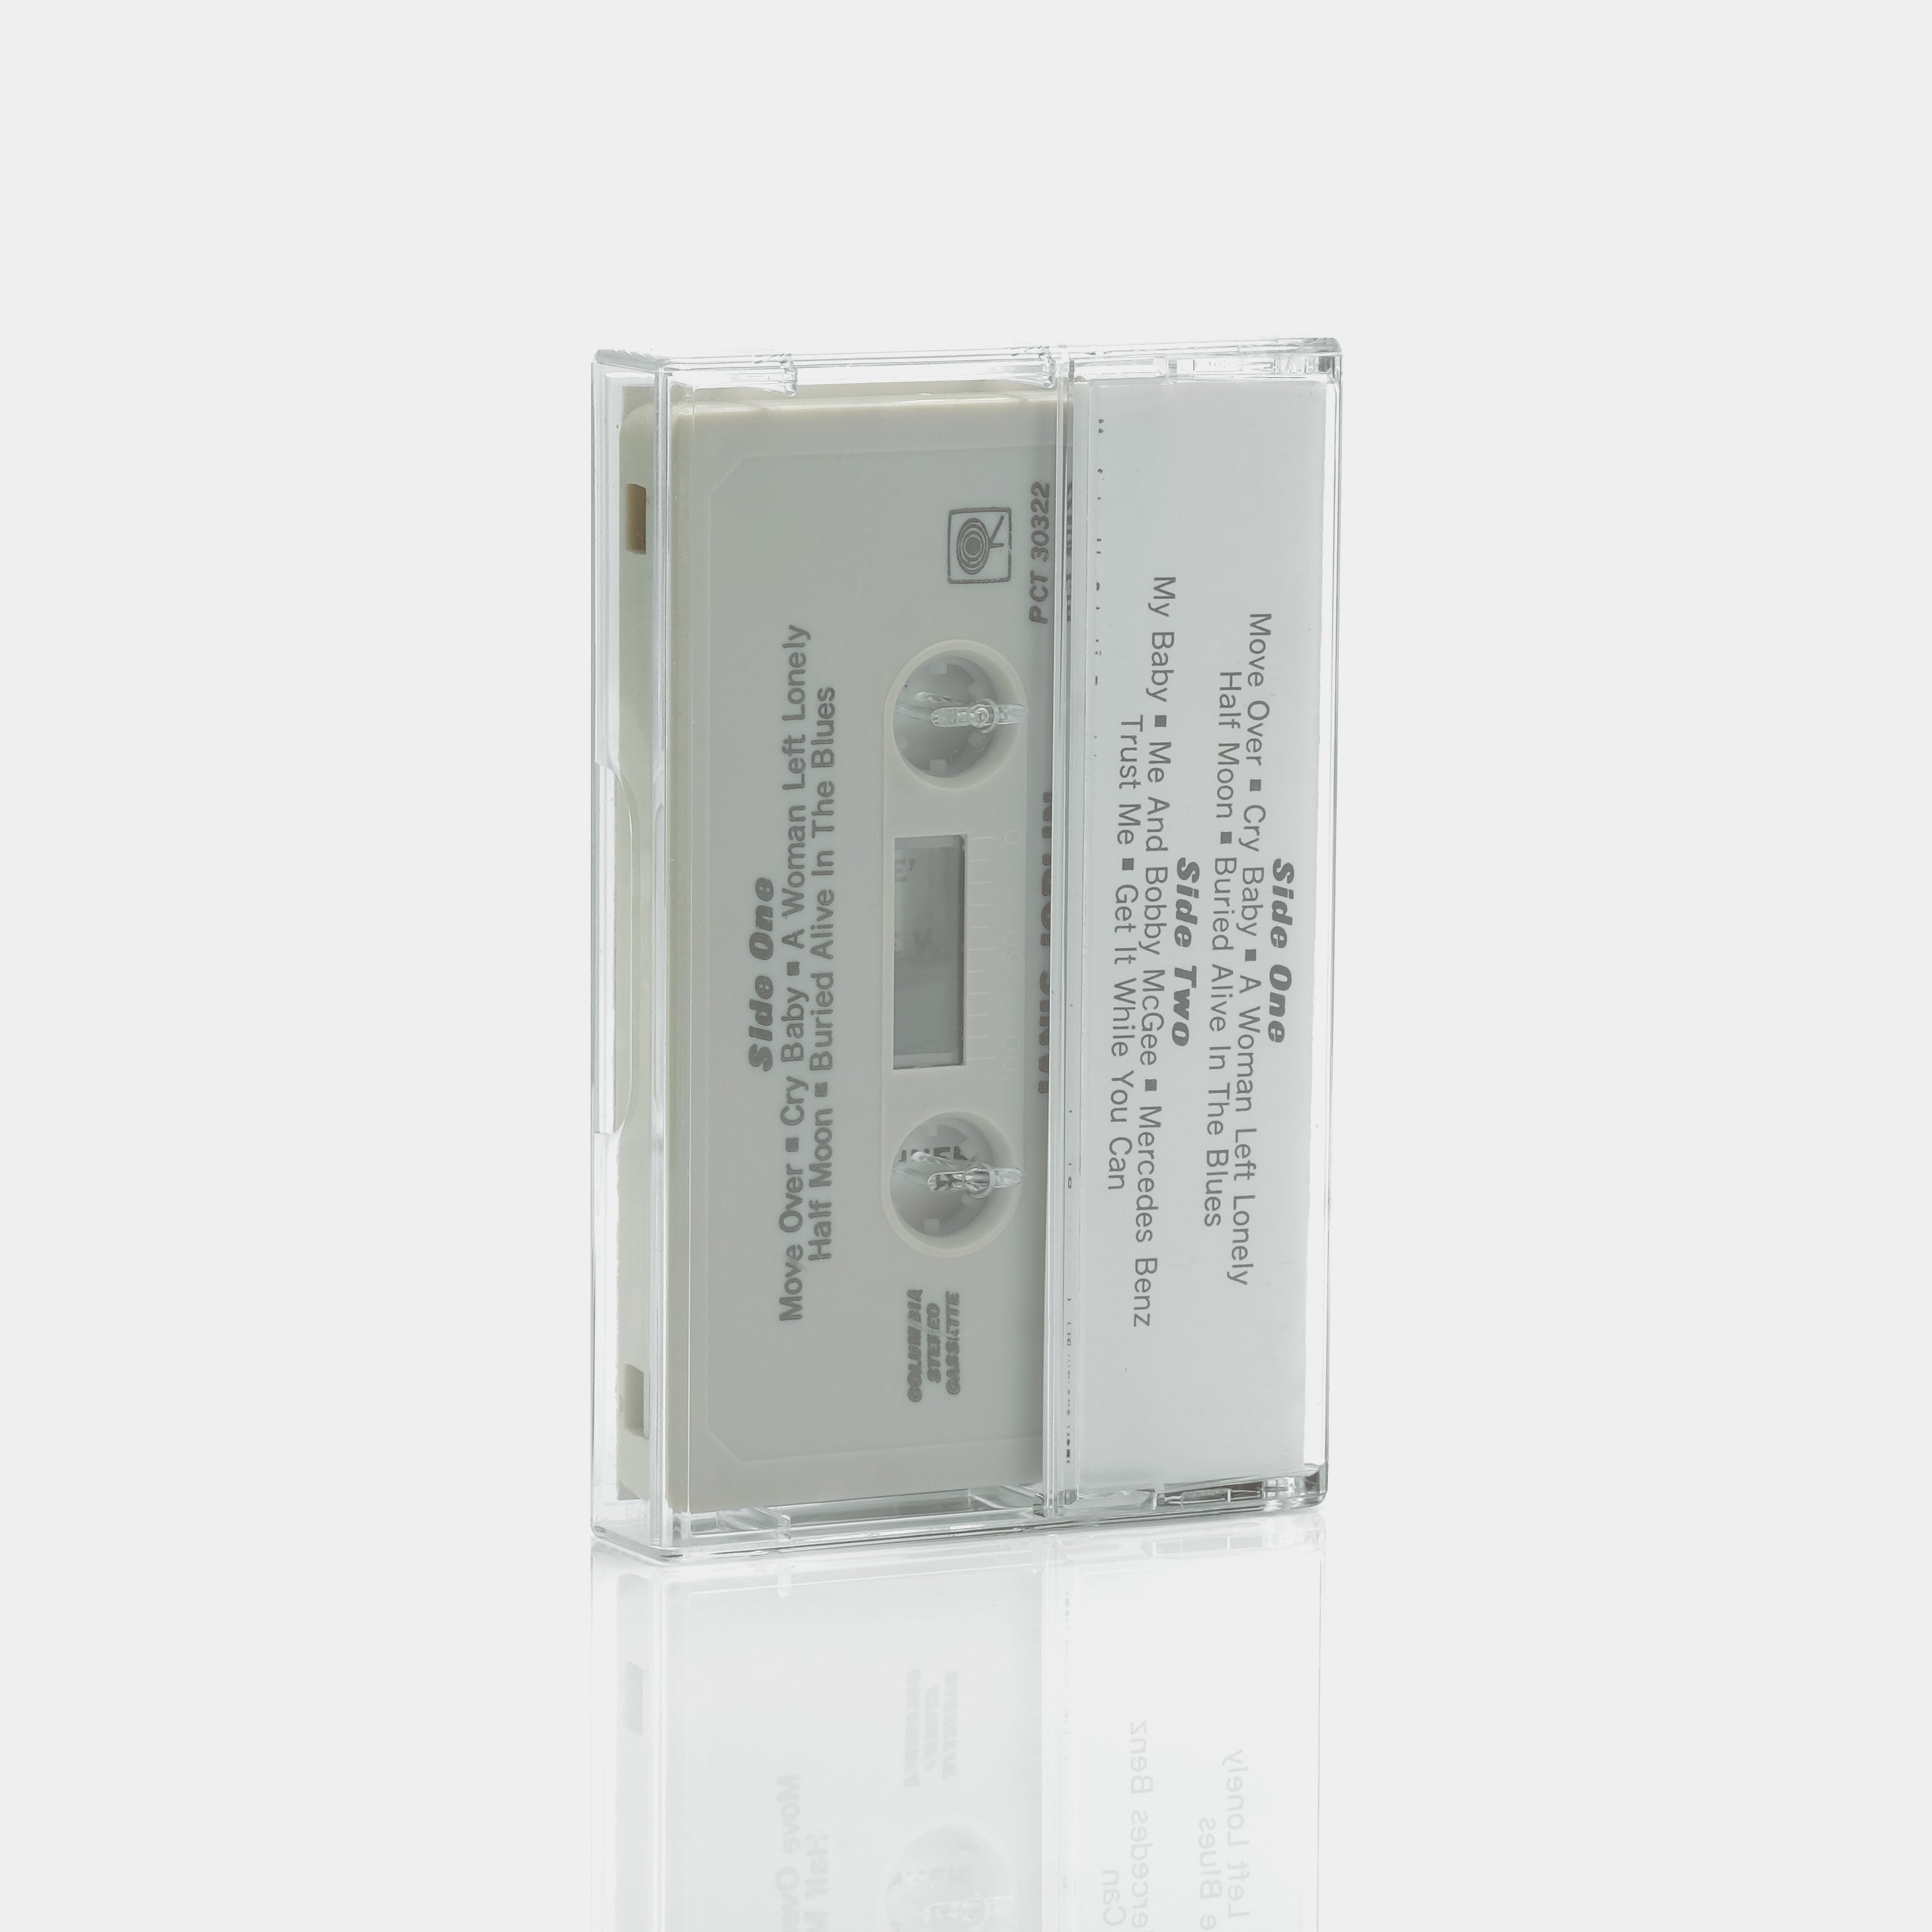 Janis Joplin - Pearl Cassette Tape